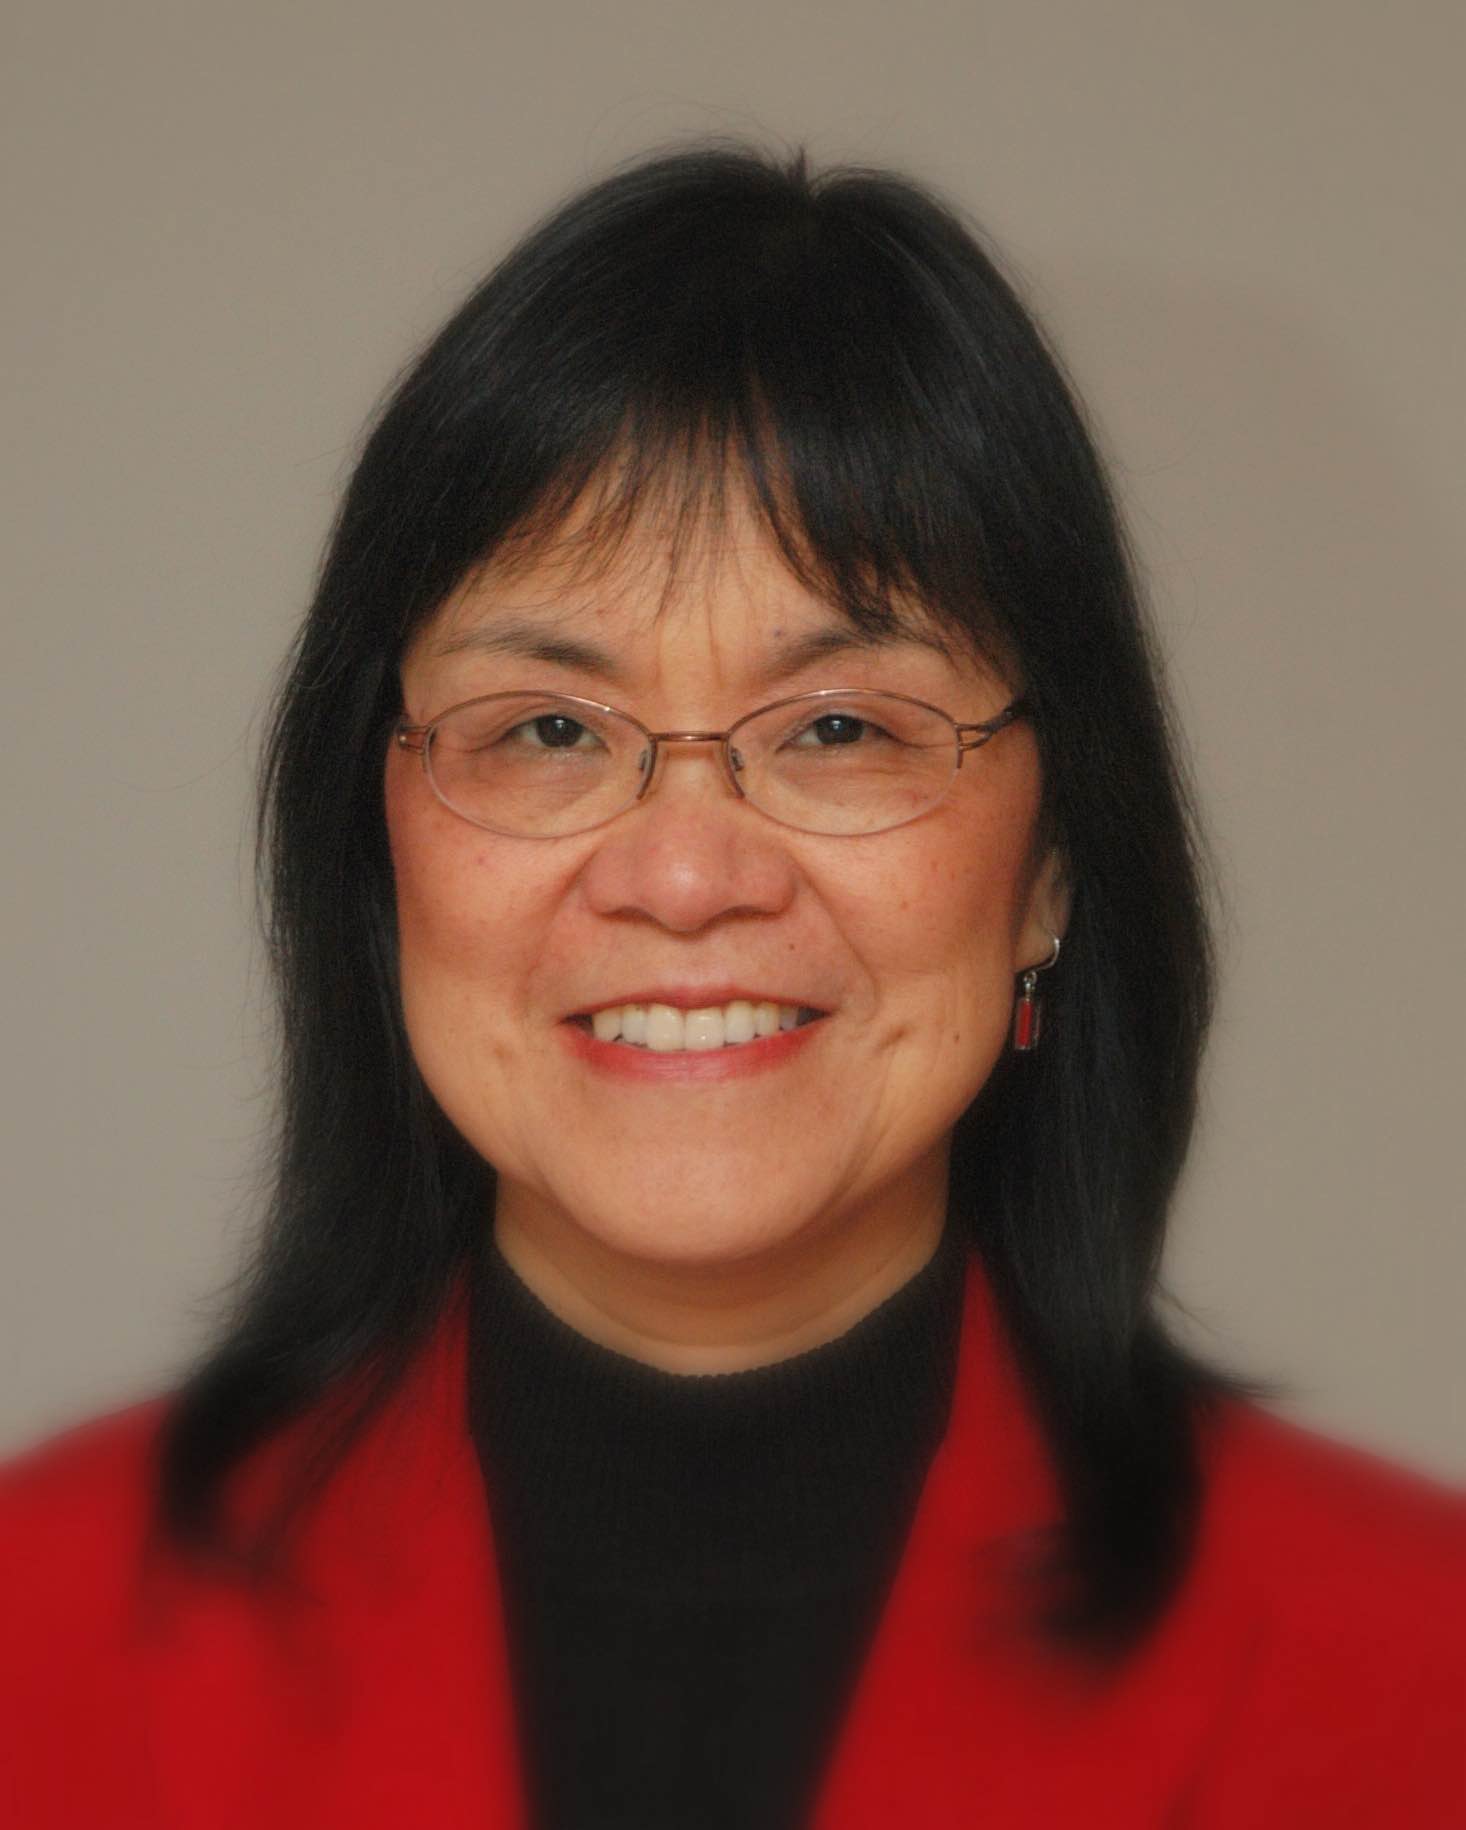 Dr. Luan Liu